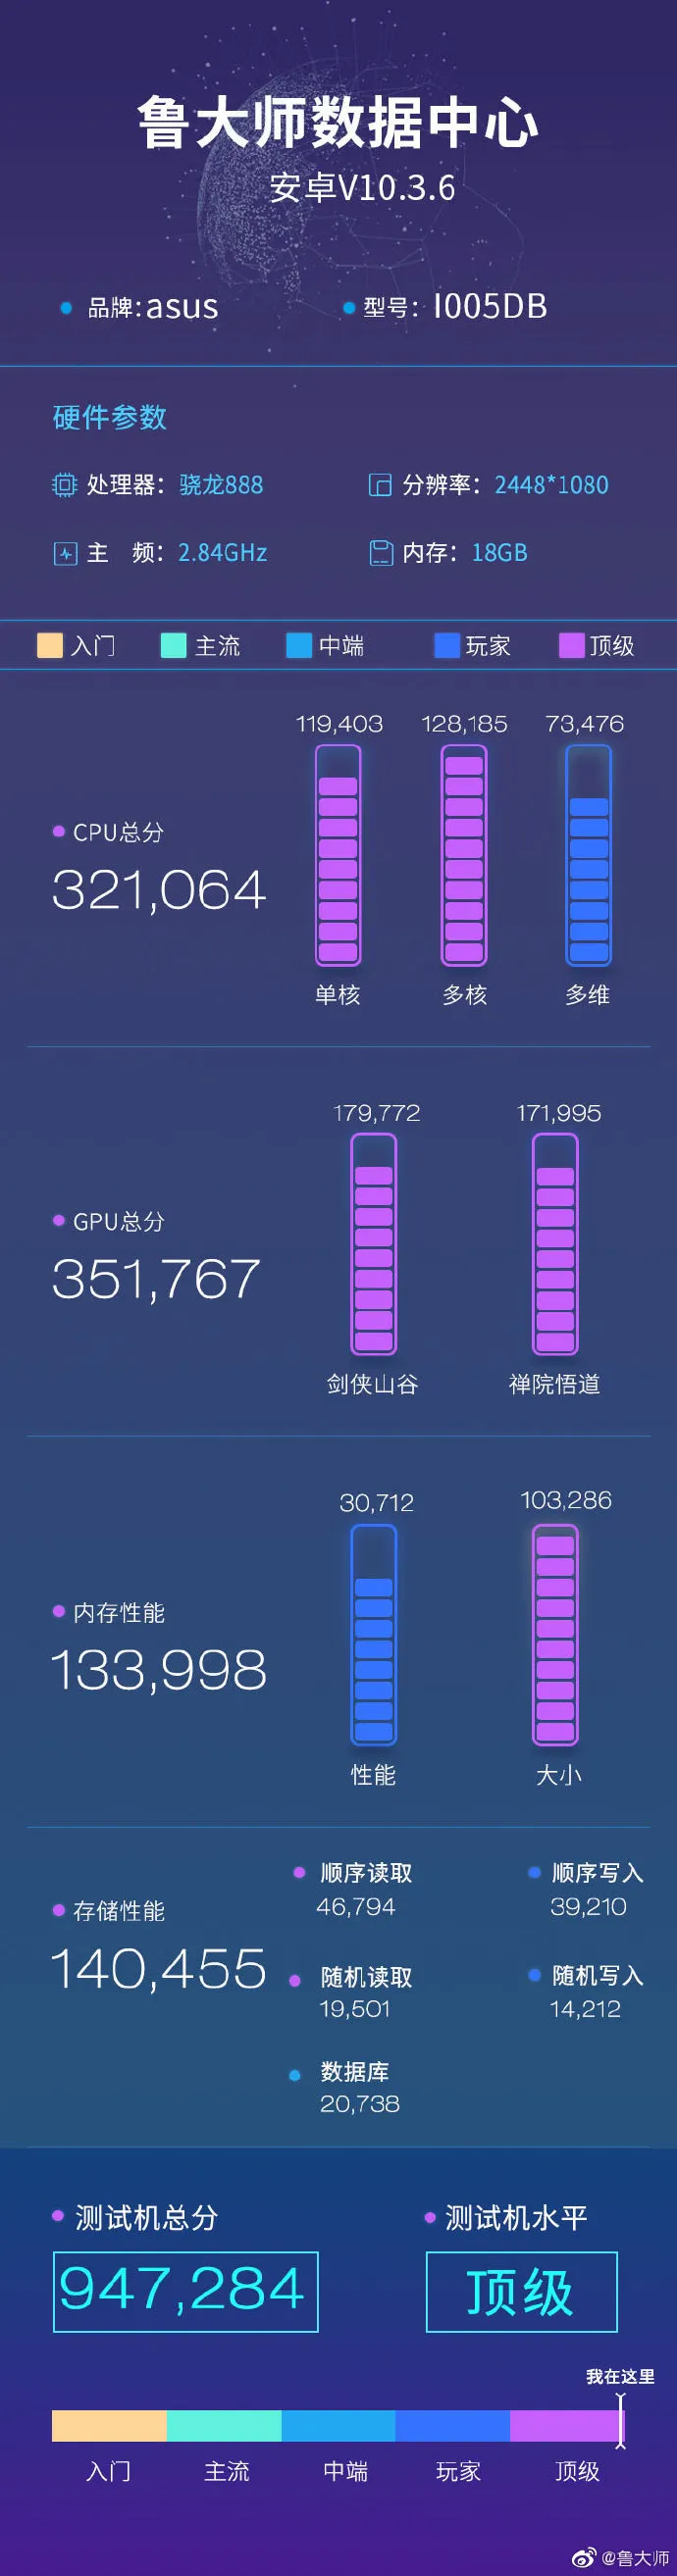 El "Rog Phone 5 de 18 GB" en Master Lu. (Fuente: Weibo)